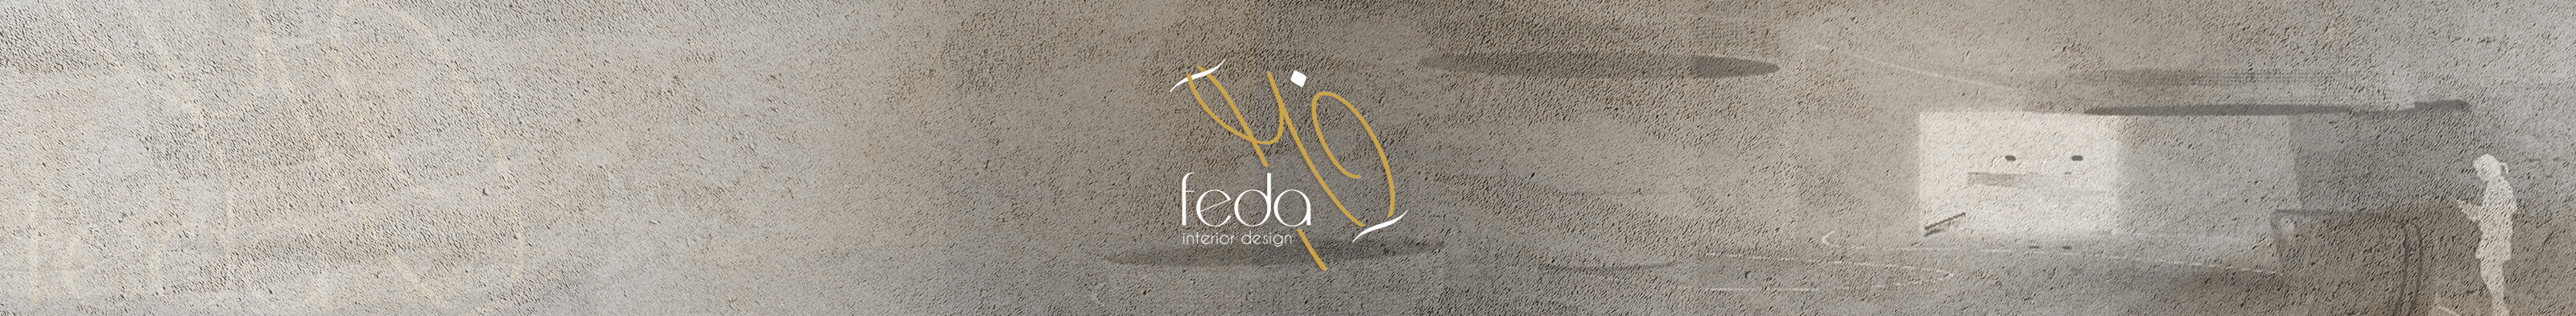 Feda Zubaidi's profile banner